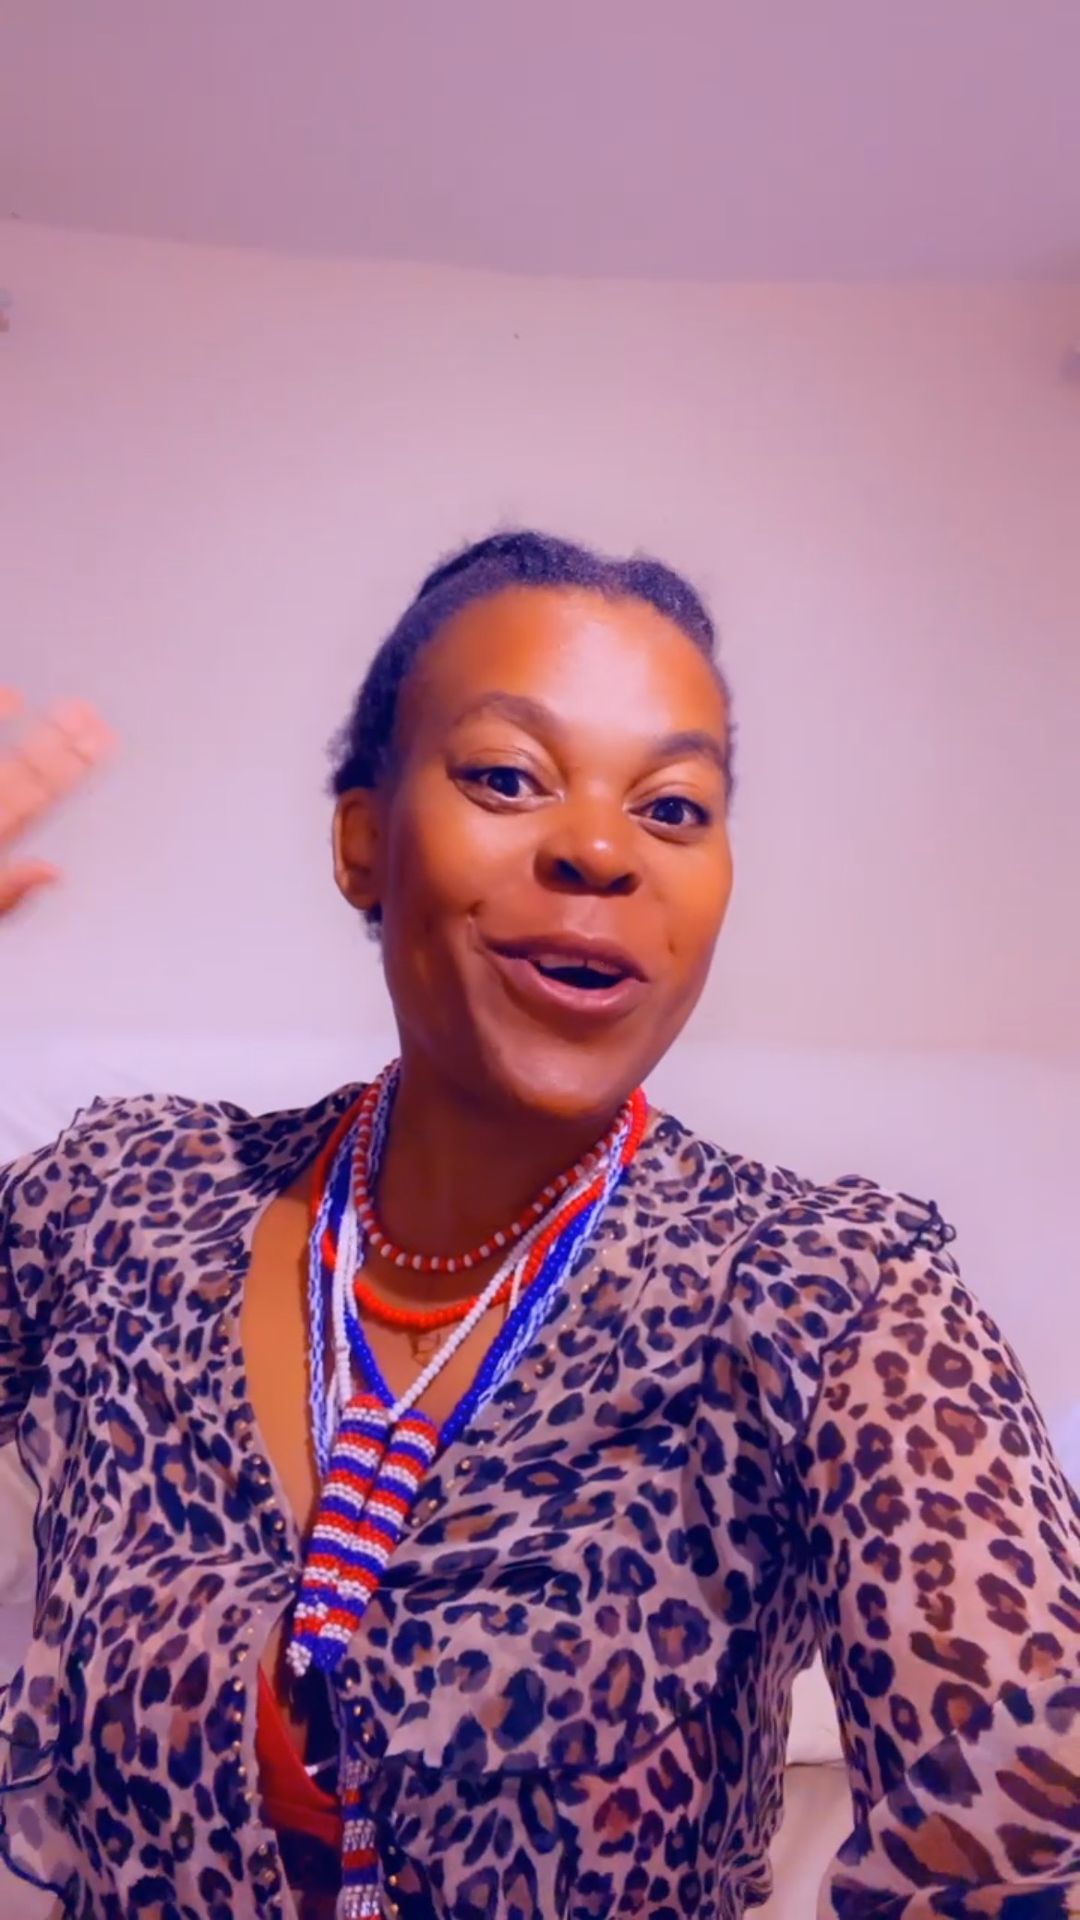 Video of Zodwa Wabantu in the club breaks the internet